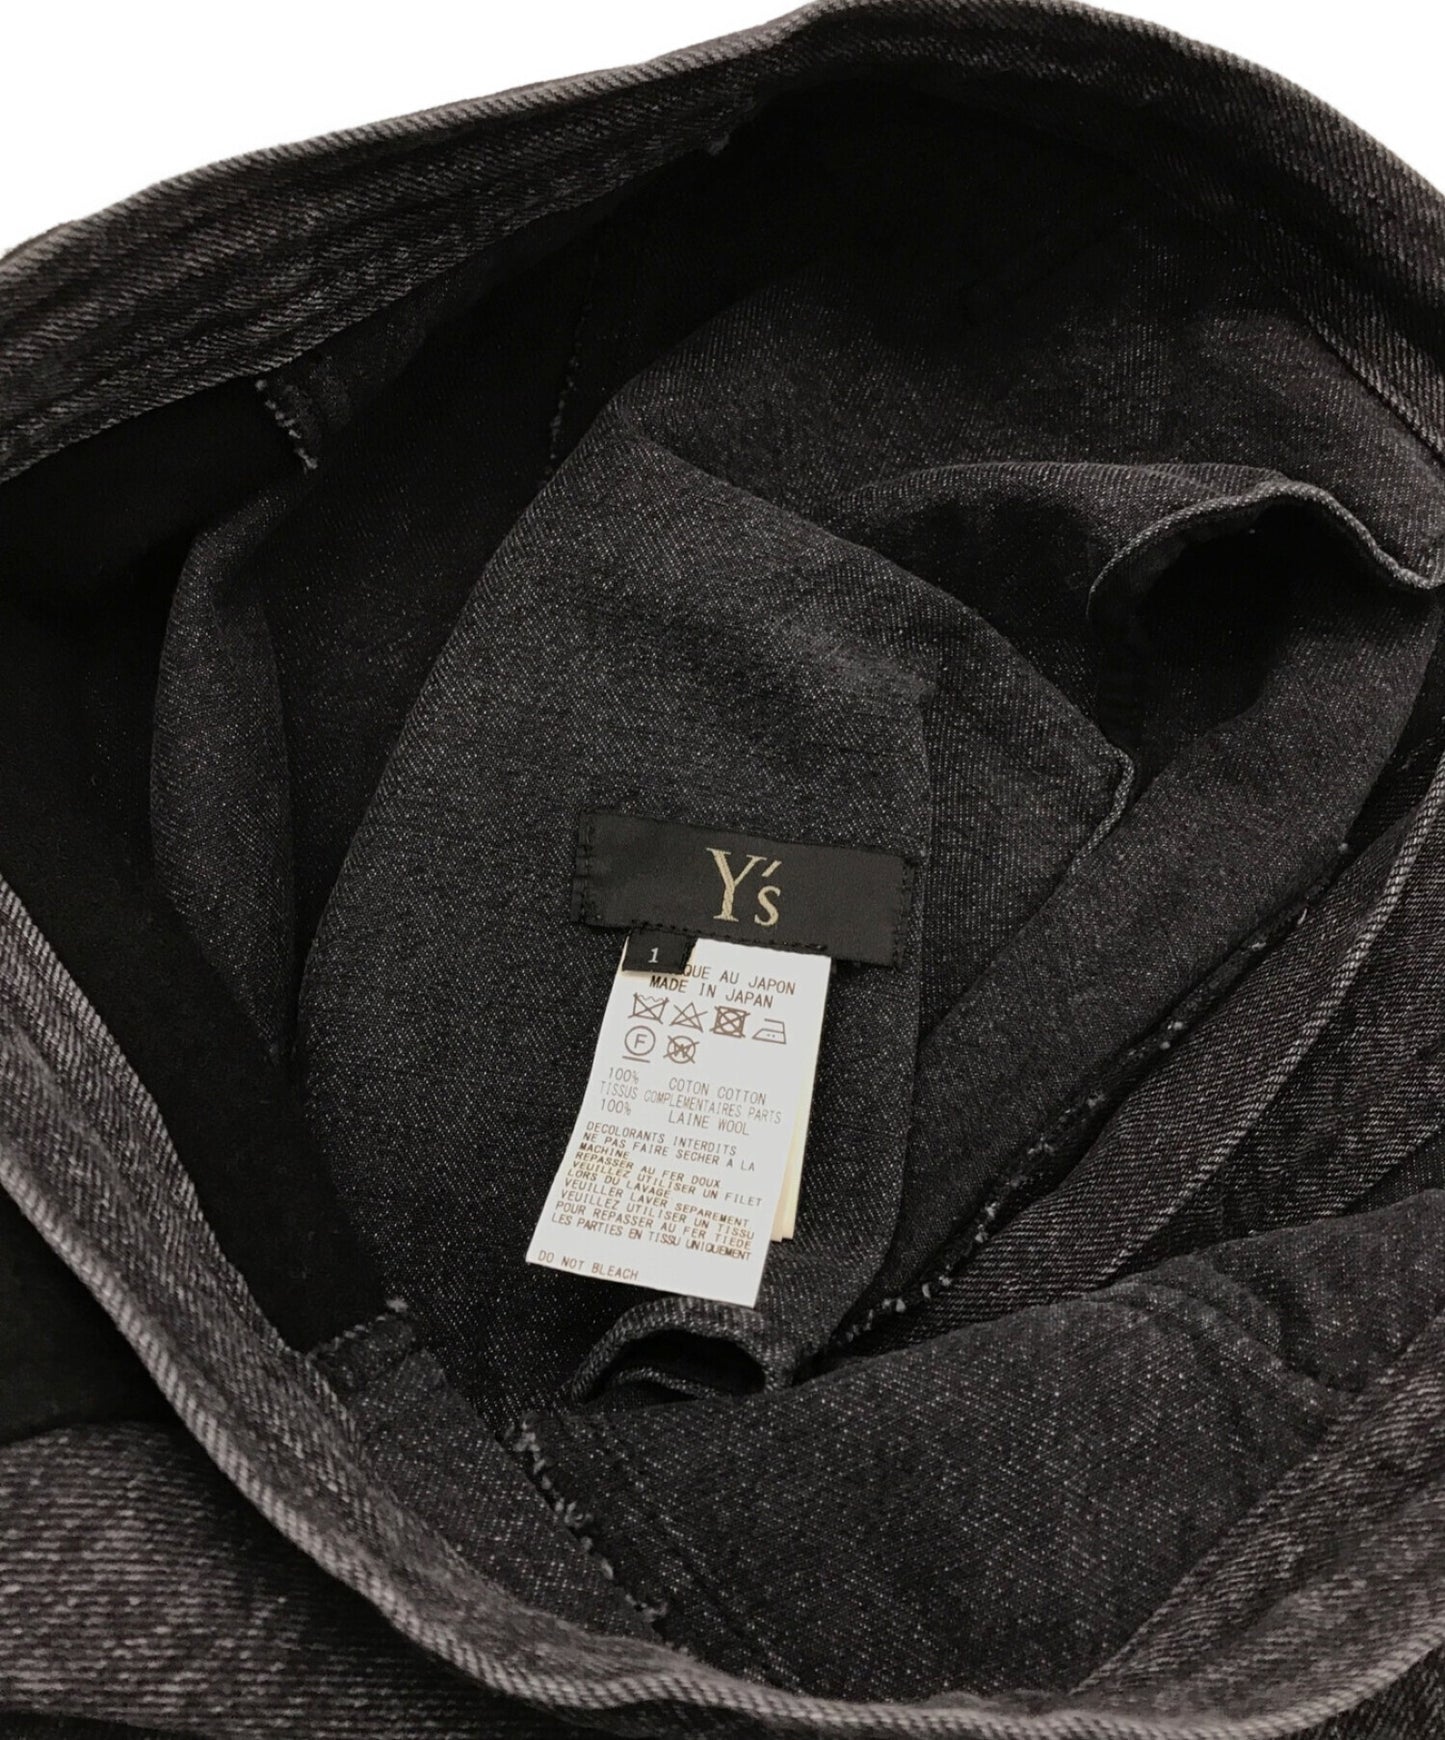 Y的羊毛開關薩爾塞爾褲yx-p12-812